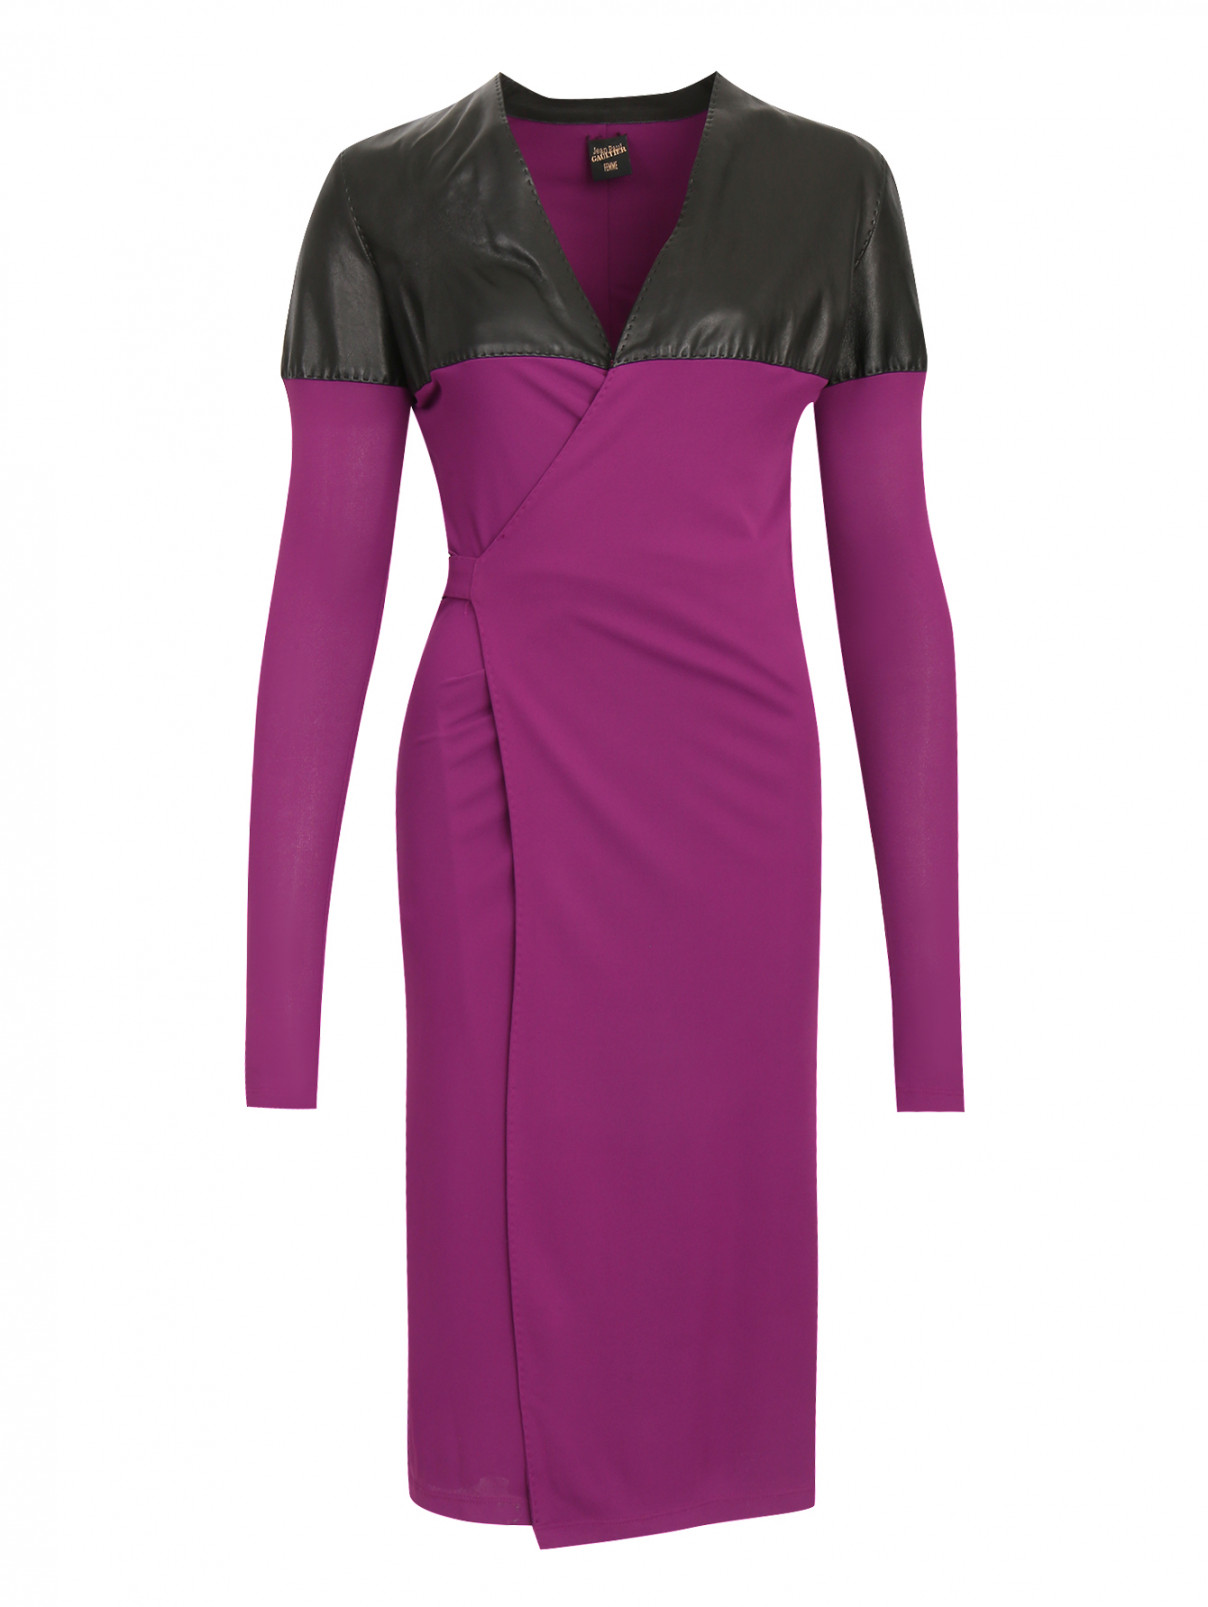 Платье с запахом и кожаными вставками Jean Paul Gaultier  –  Общий вид  – Цвет:  Фиолетовый